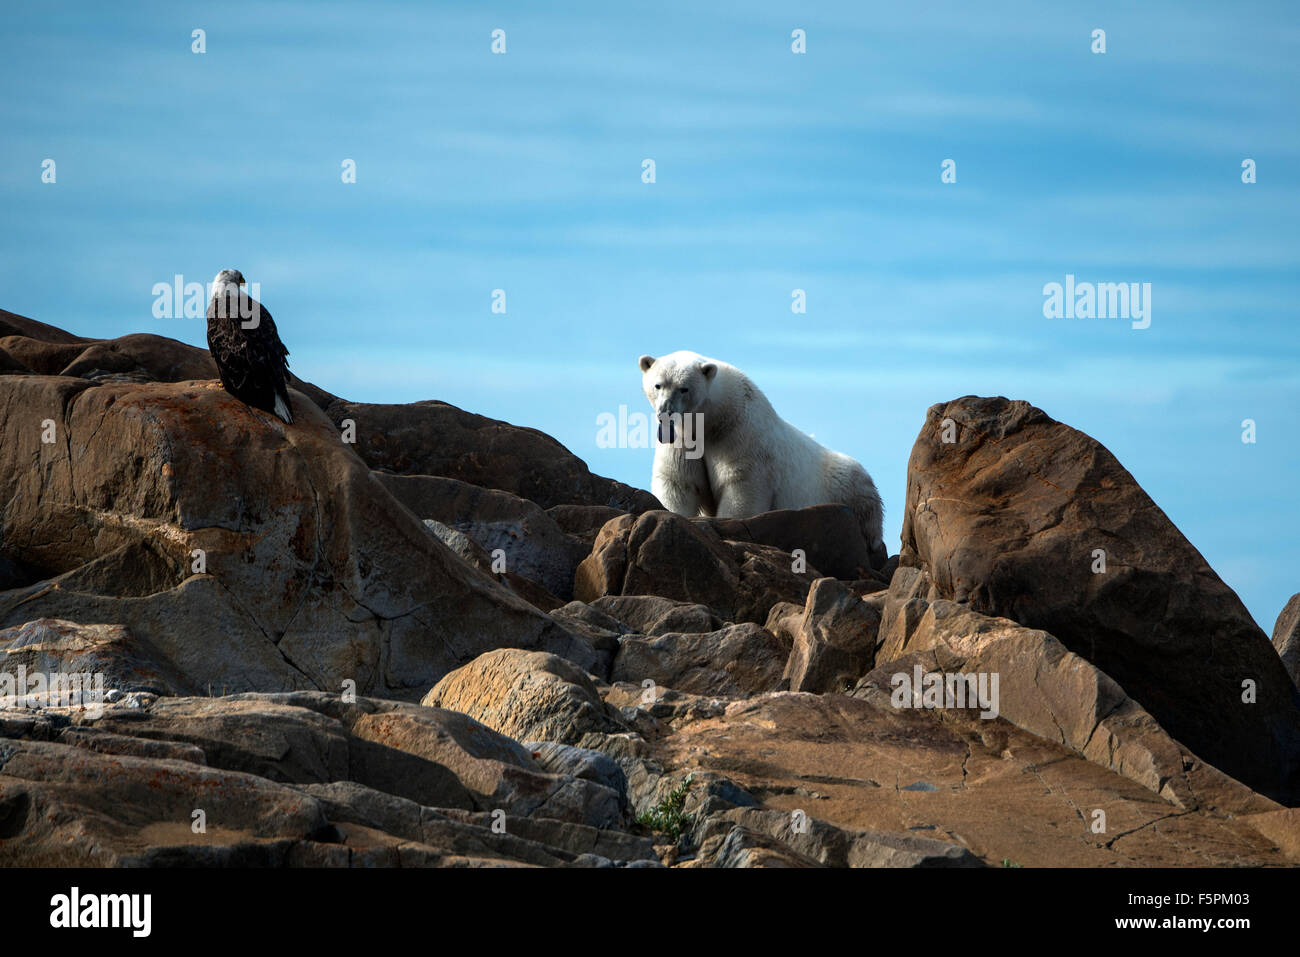 Adultes Ours polaire (Ursus maritimus) assis sur des rochers tirant la langue de Pygargue à tête blanche (Haliaeetus leucocephalus) Churchill, Manit Banque D'Images